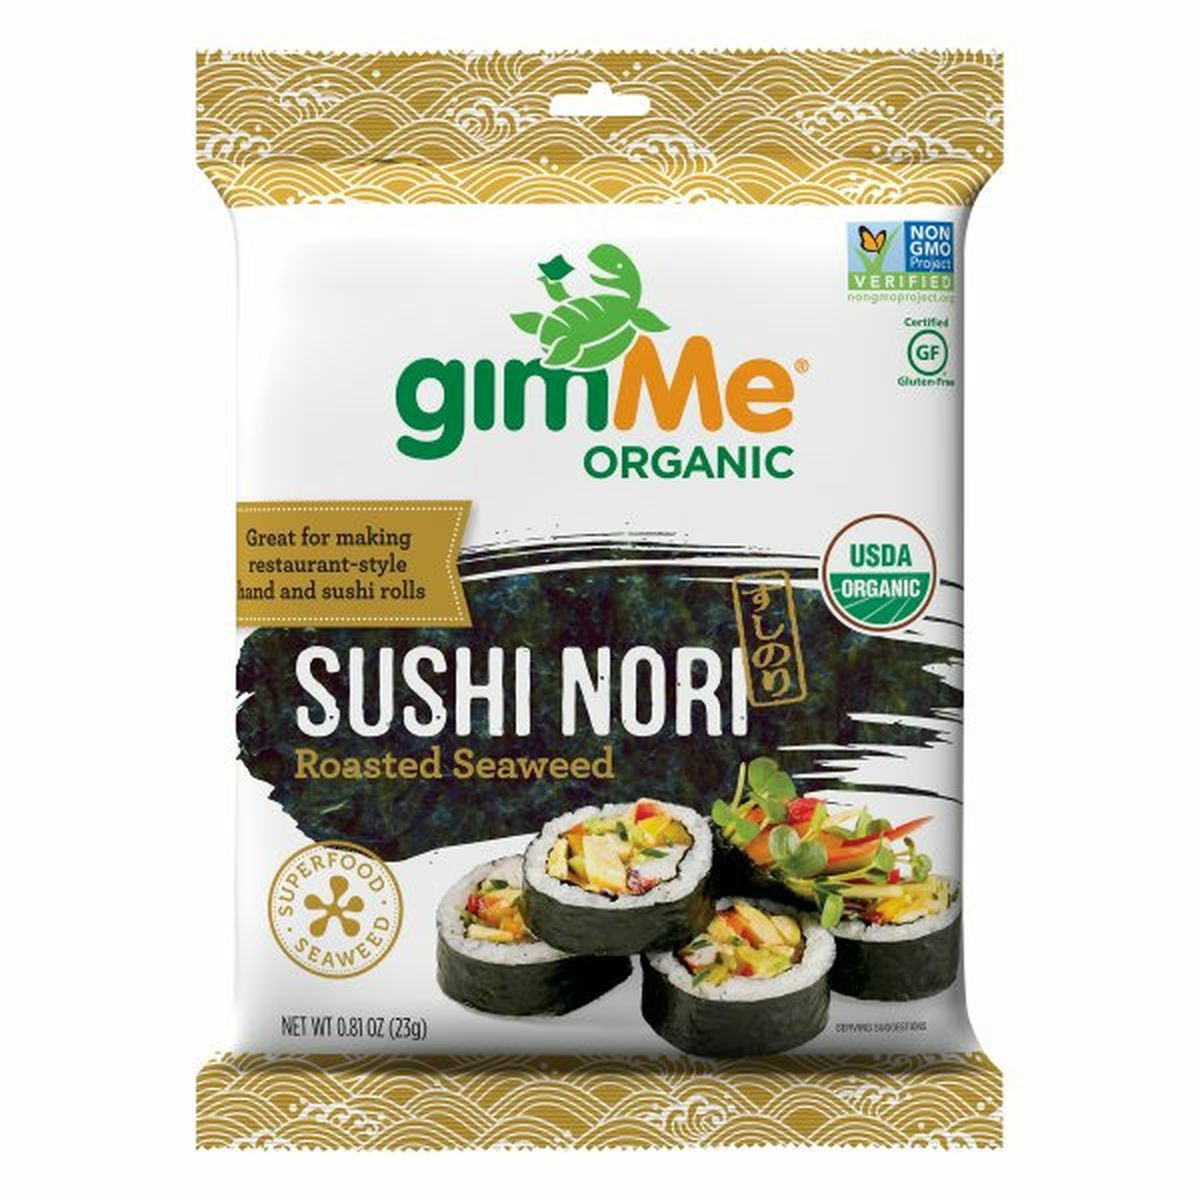 Calories in gimMe Organic Sushi Nori, Roasted Seaweed